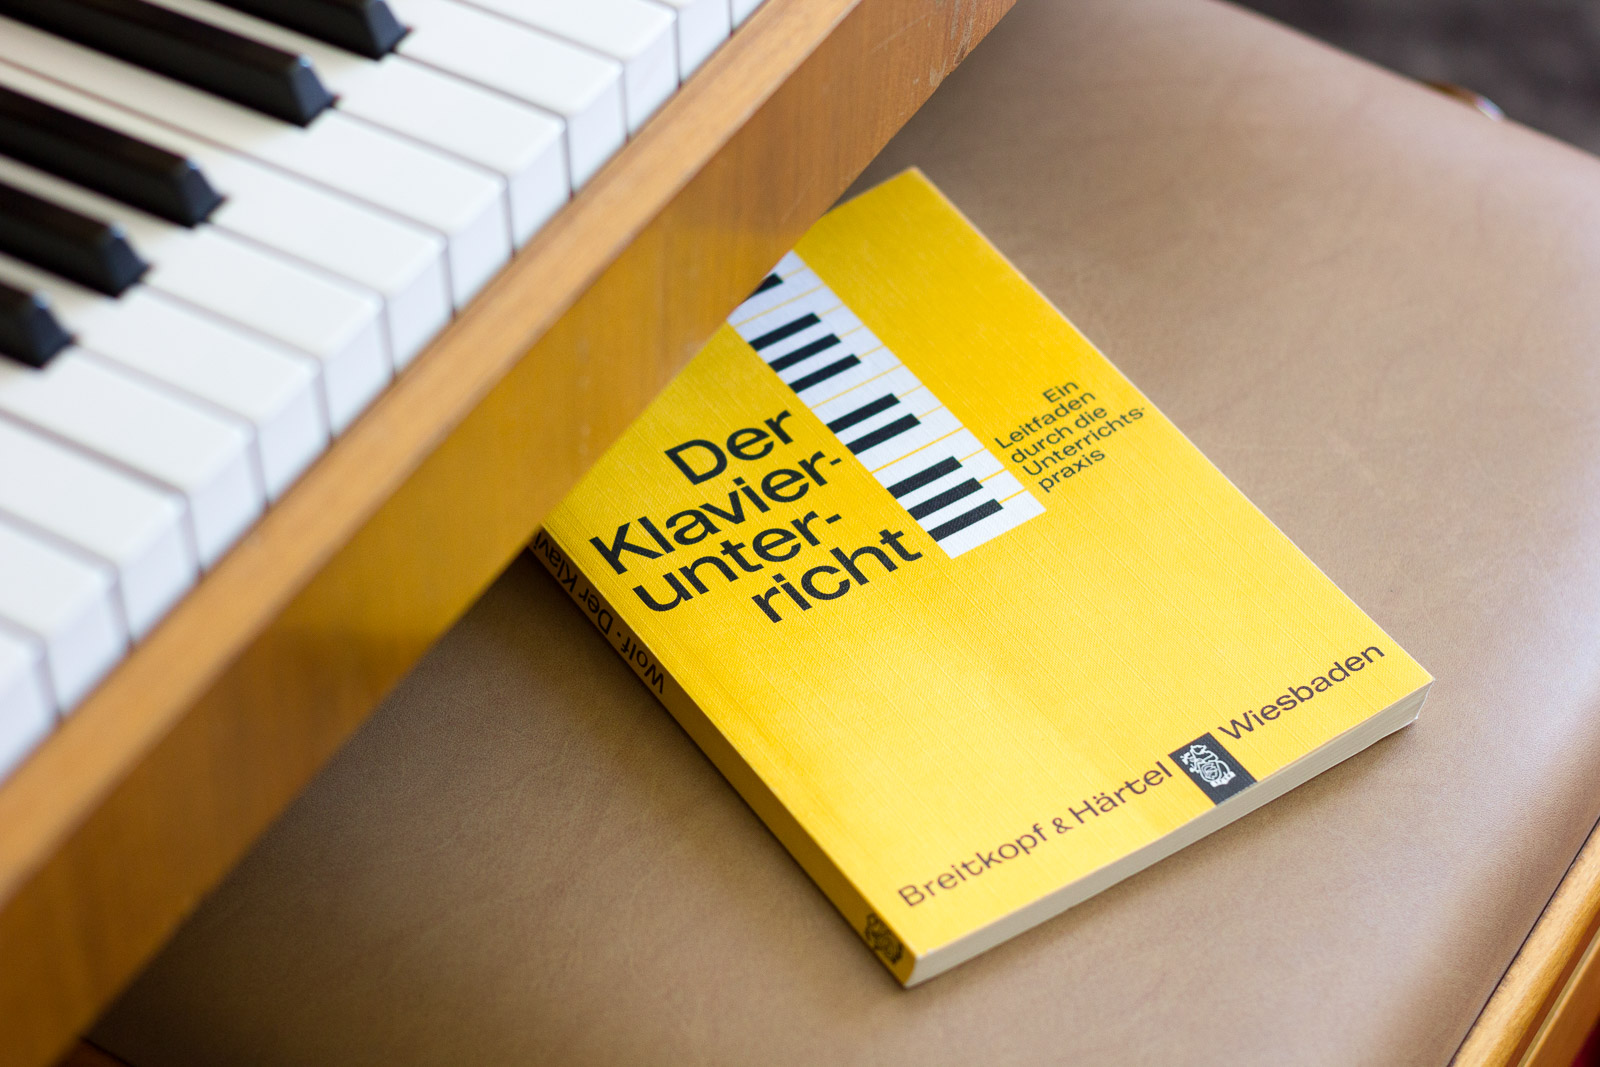 Klavierunterricht: Buch "Der Klavierunterricht" auf Klavierhocker